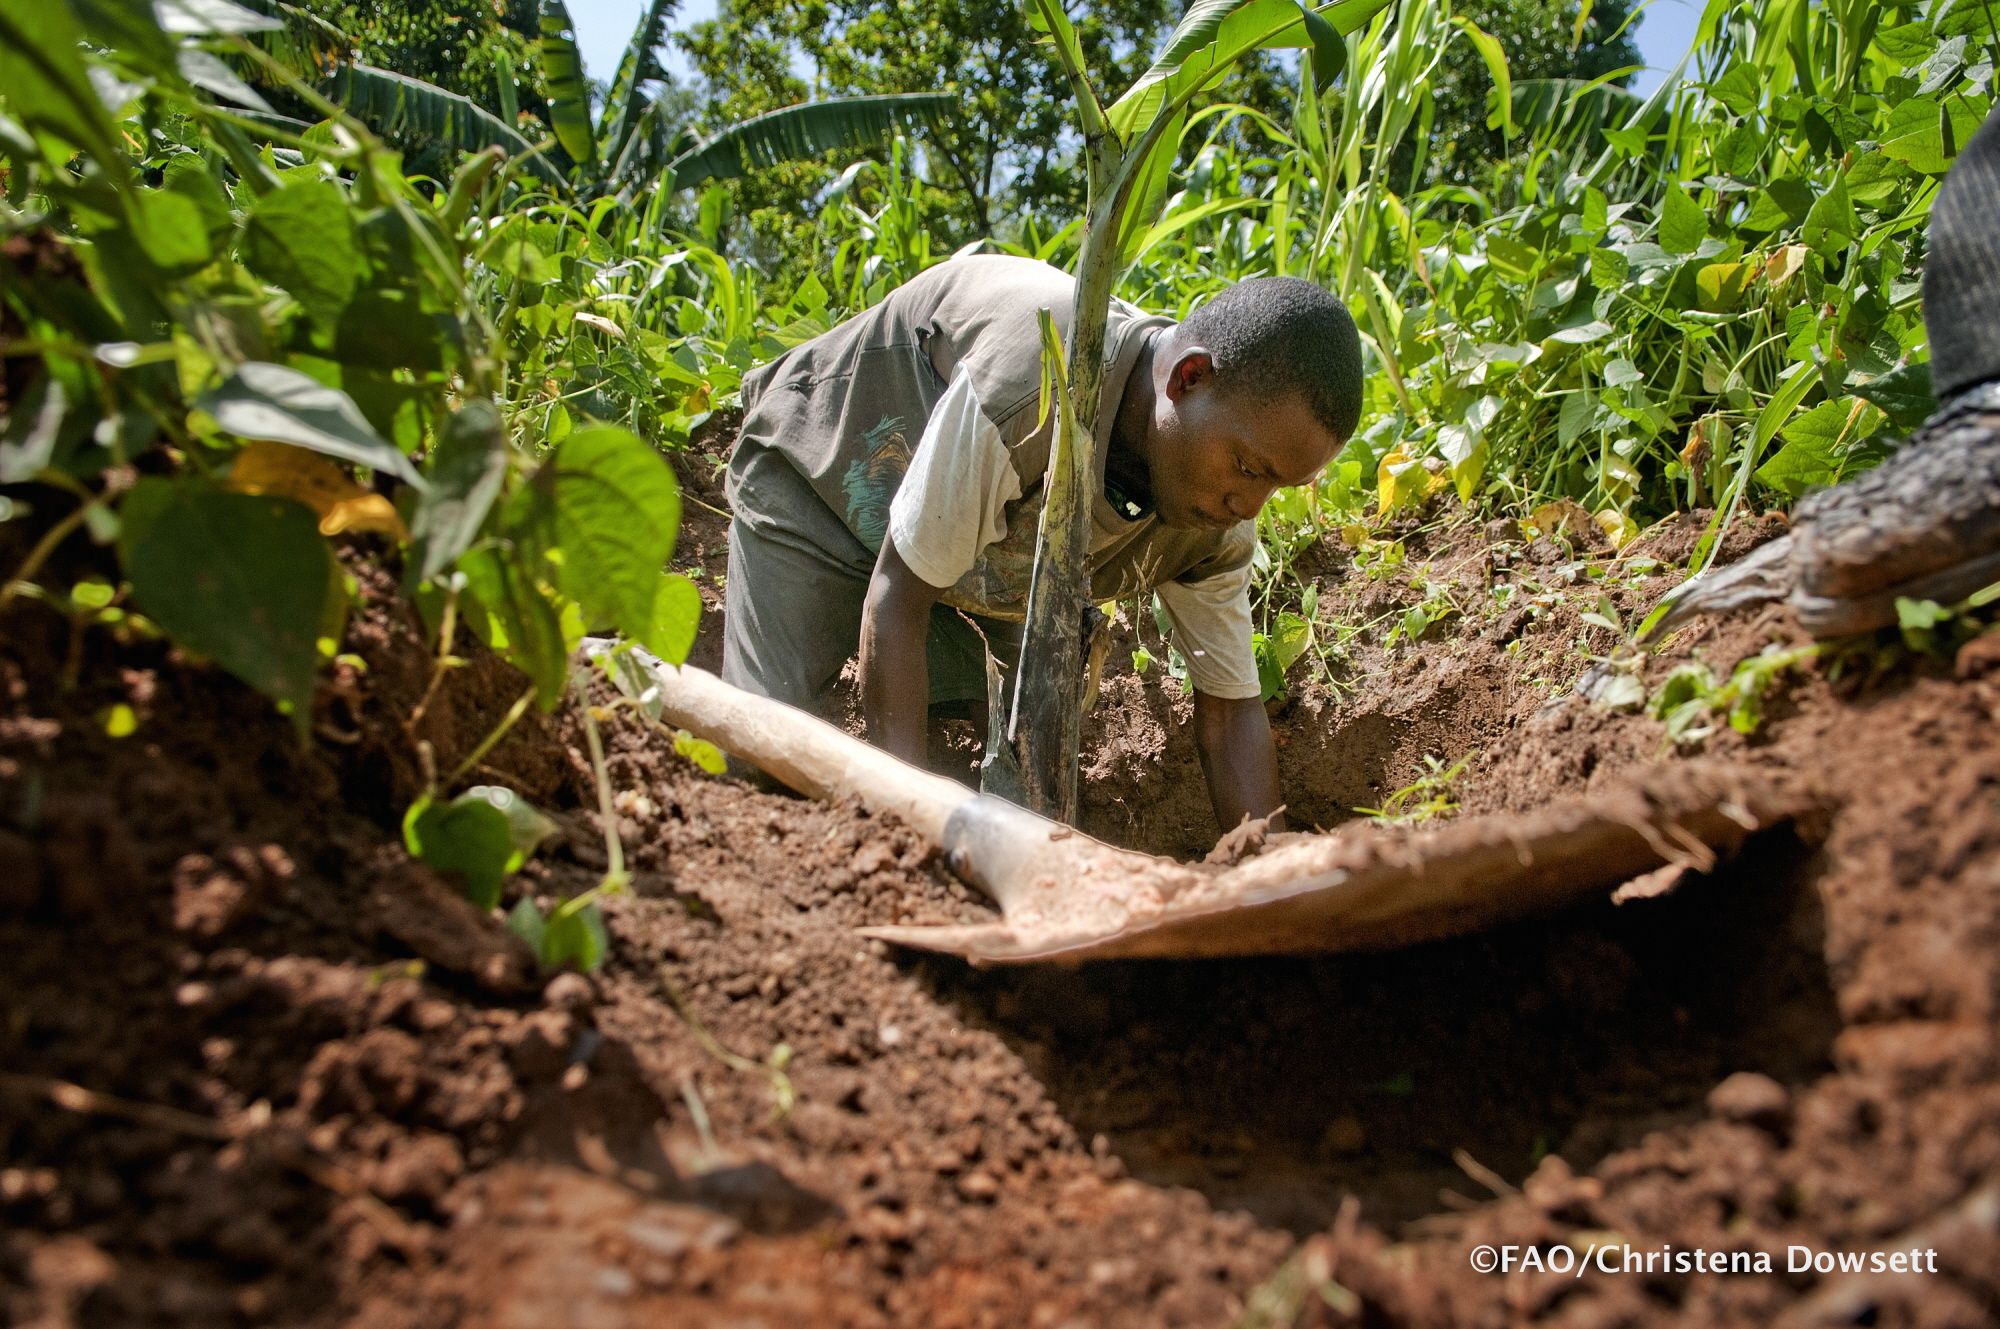 Siaya District, Kenya - Man preparing soil for planting banana ...